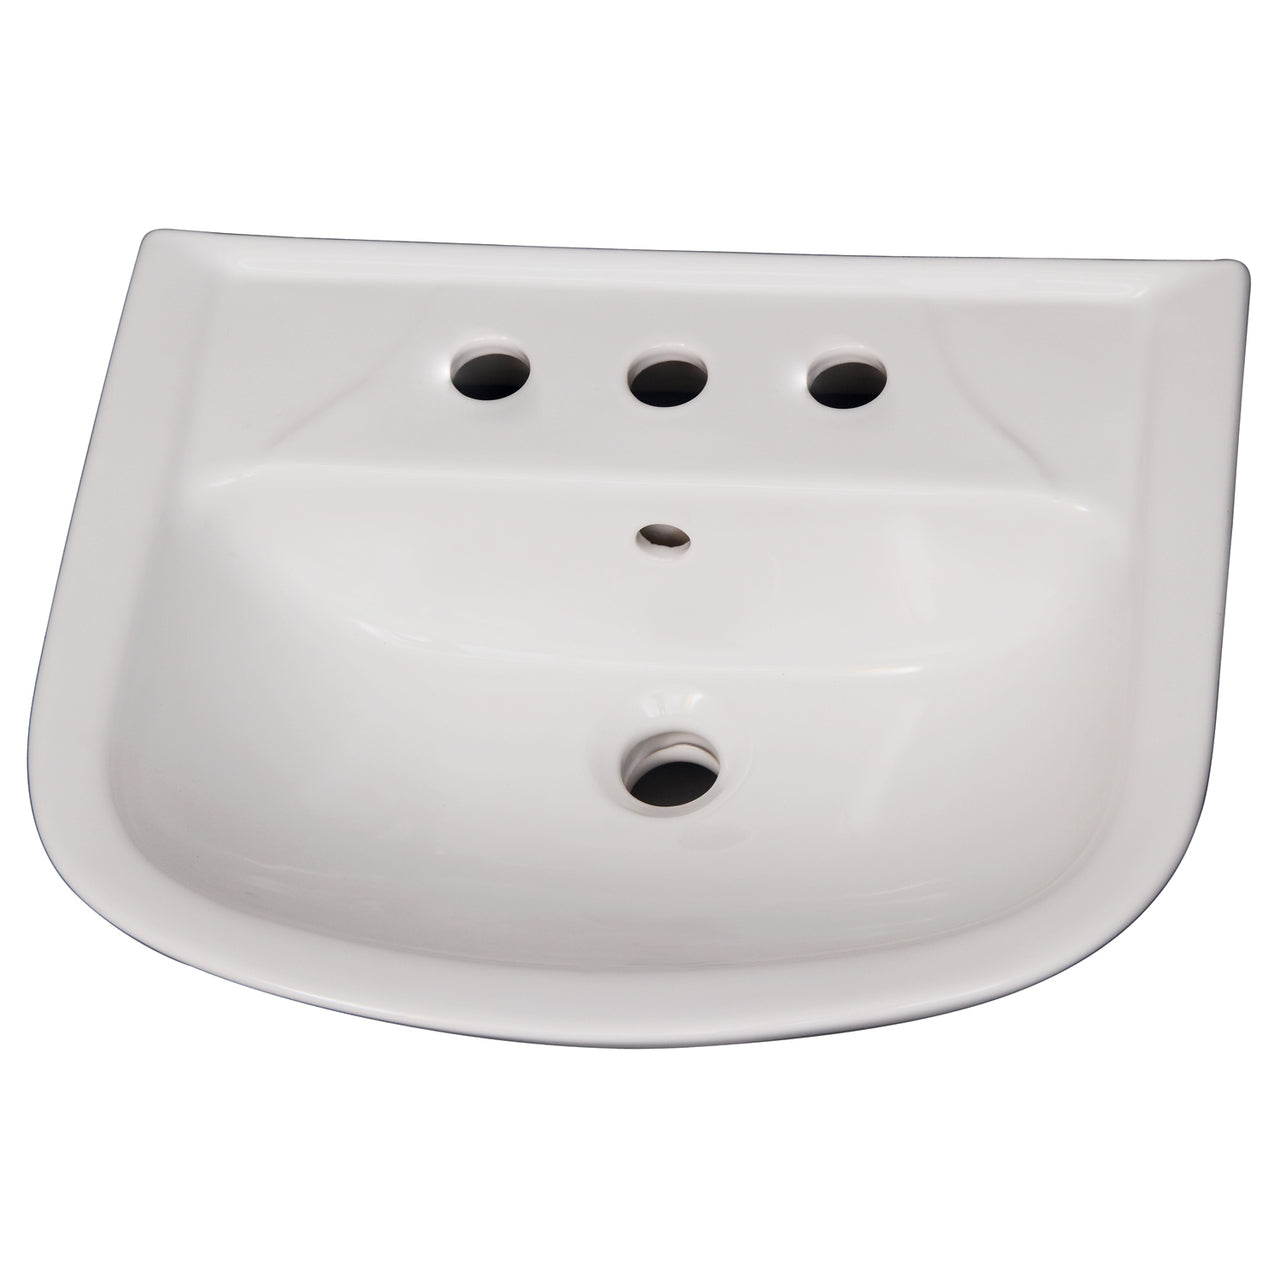 Lara 510 Pedestal Bathroom Sink White for 8" Widespread